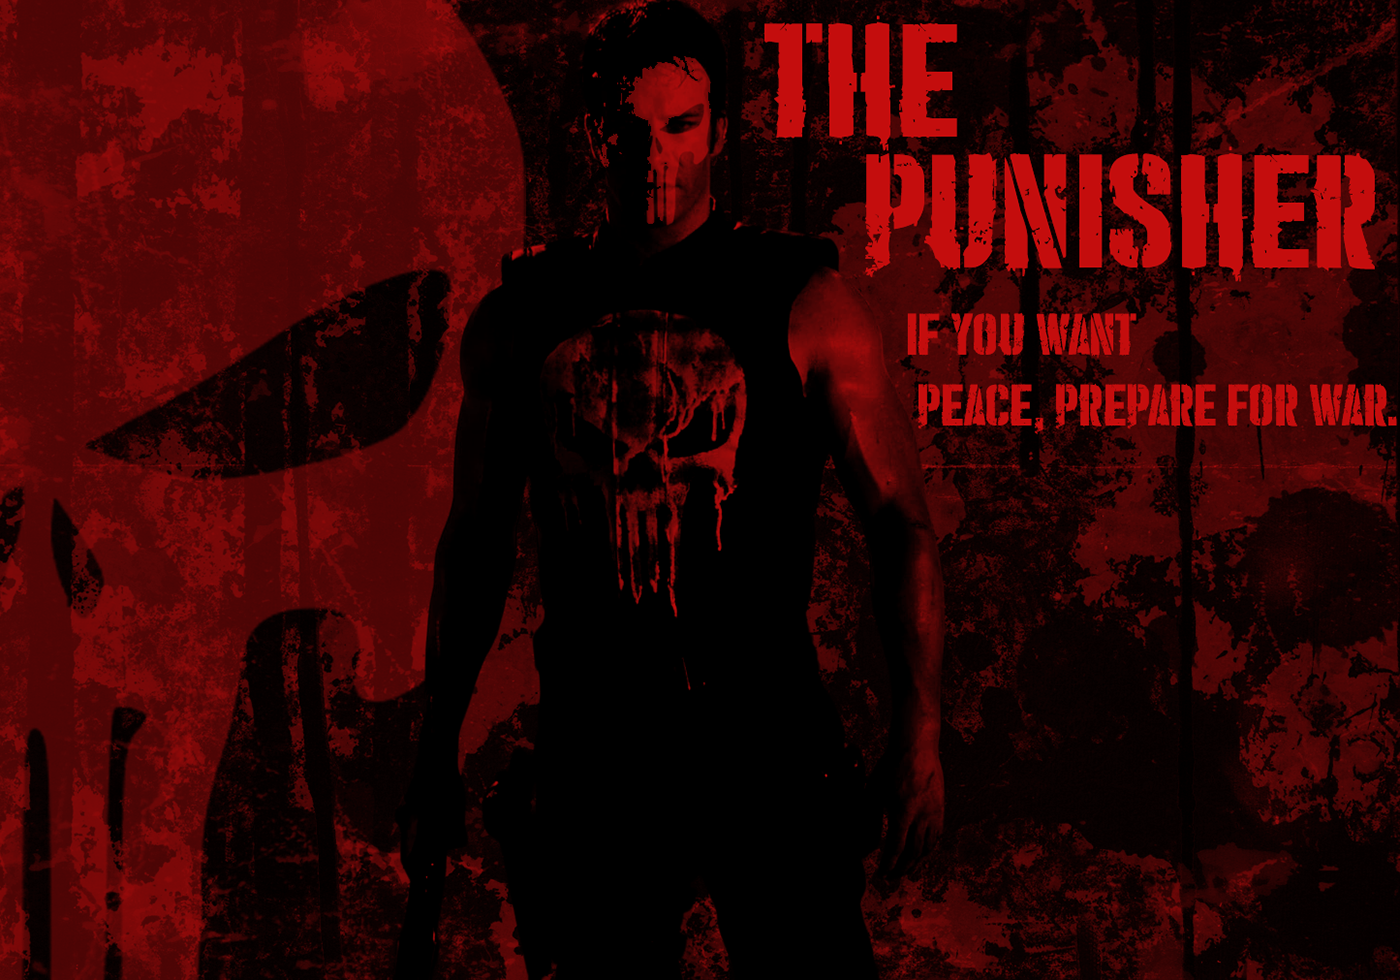 the punisher جرافيكس   marvel skull poster Frank Castle movie poster Film   the punisher poster